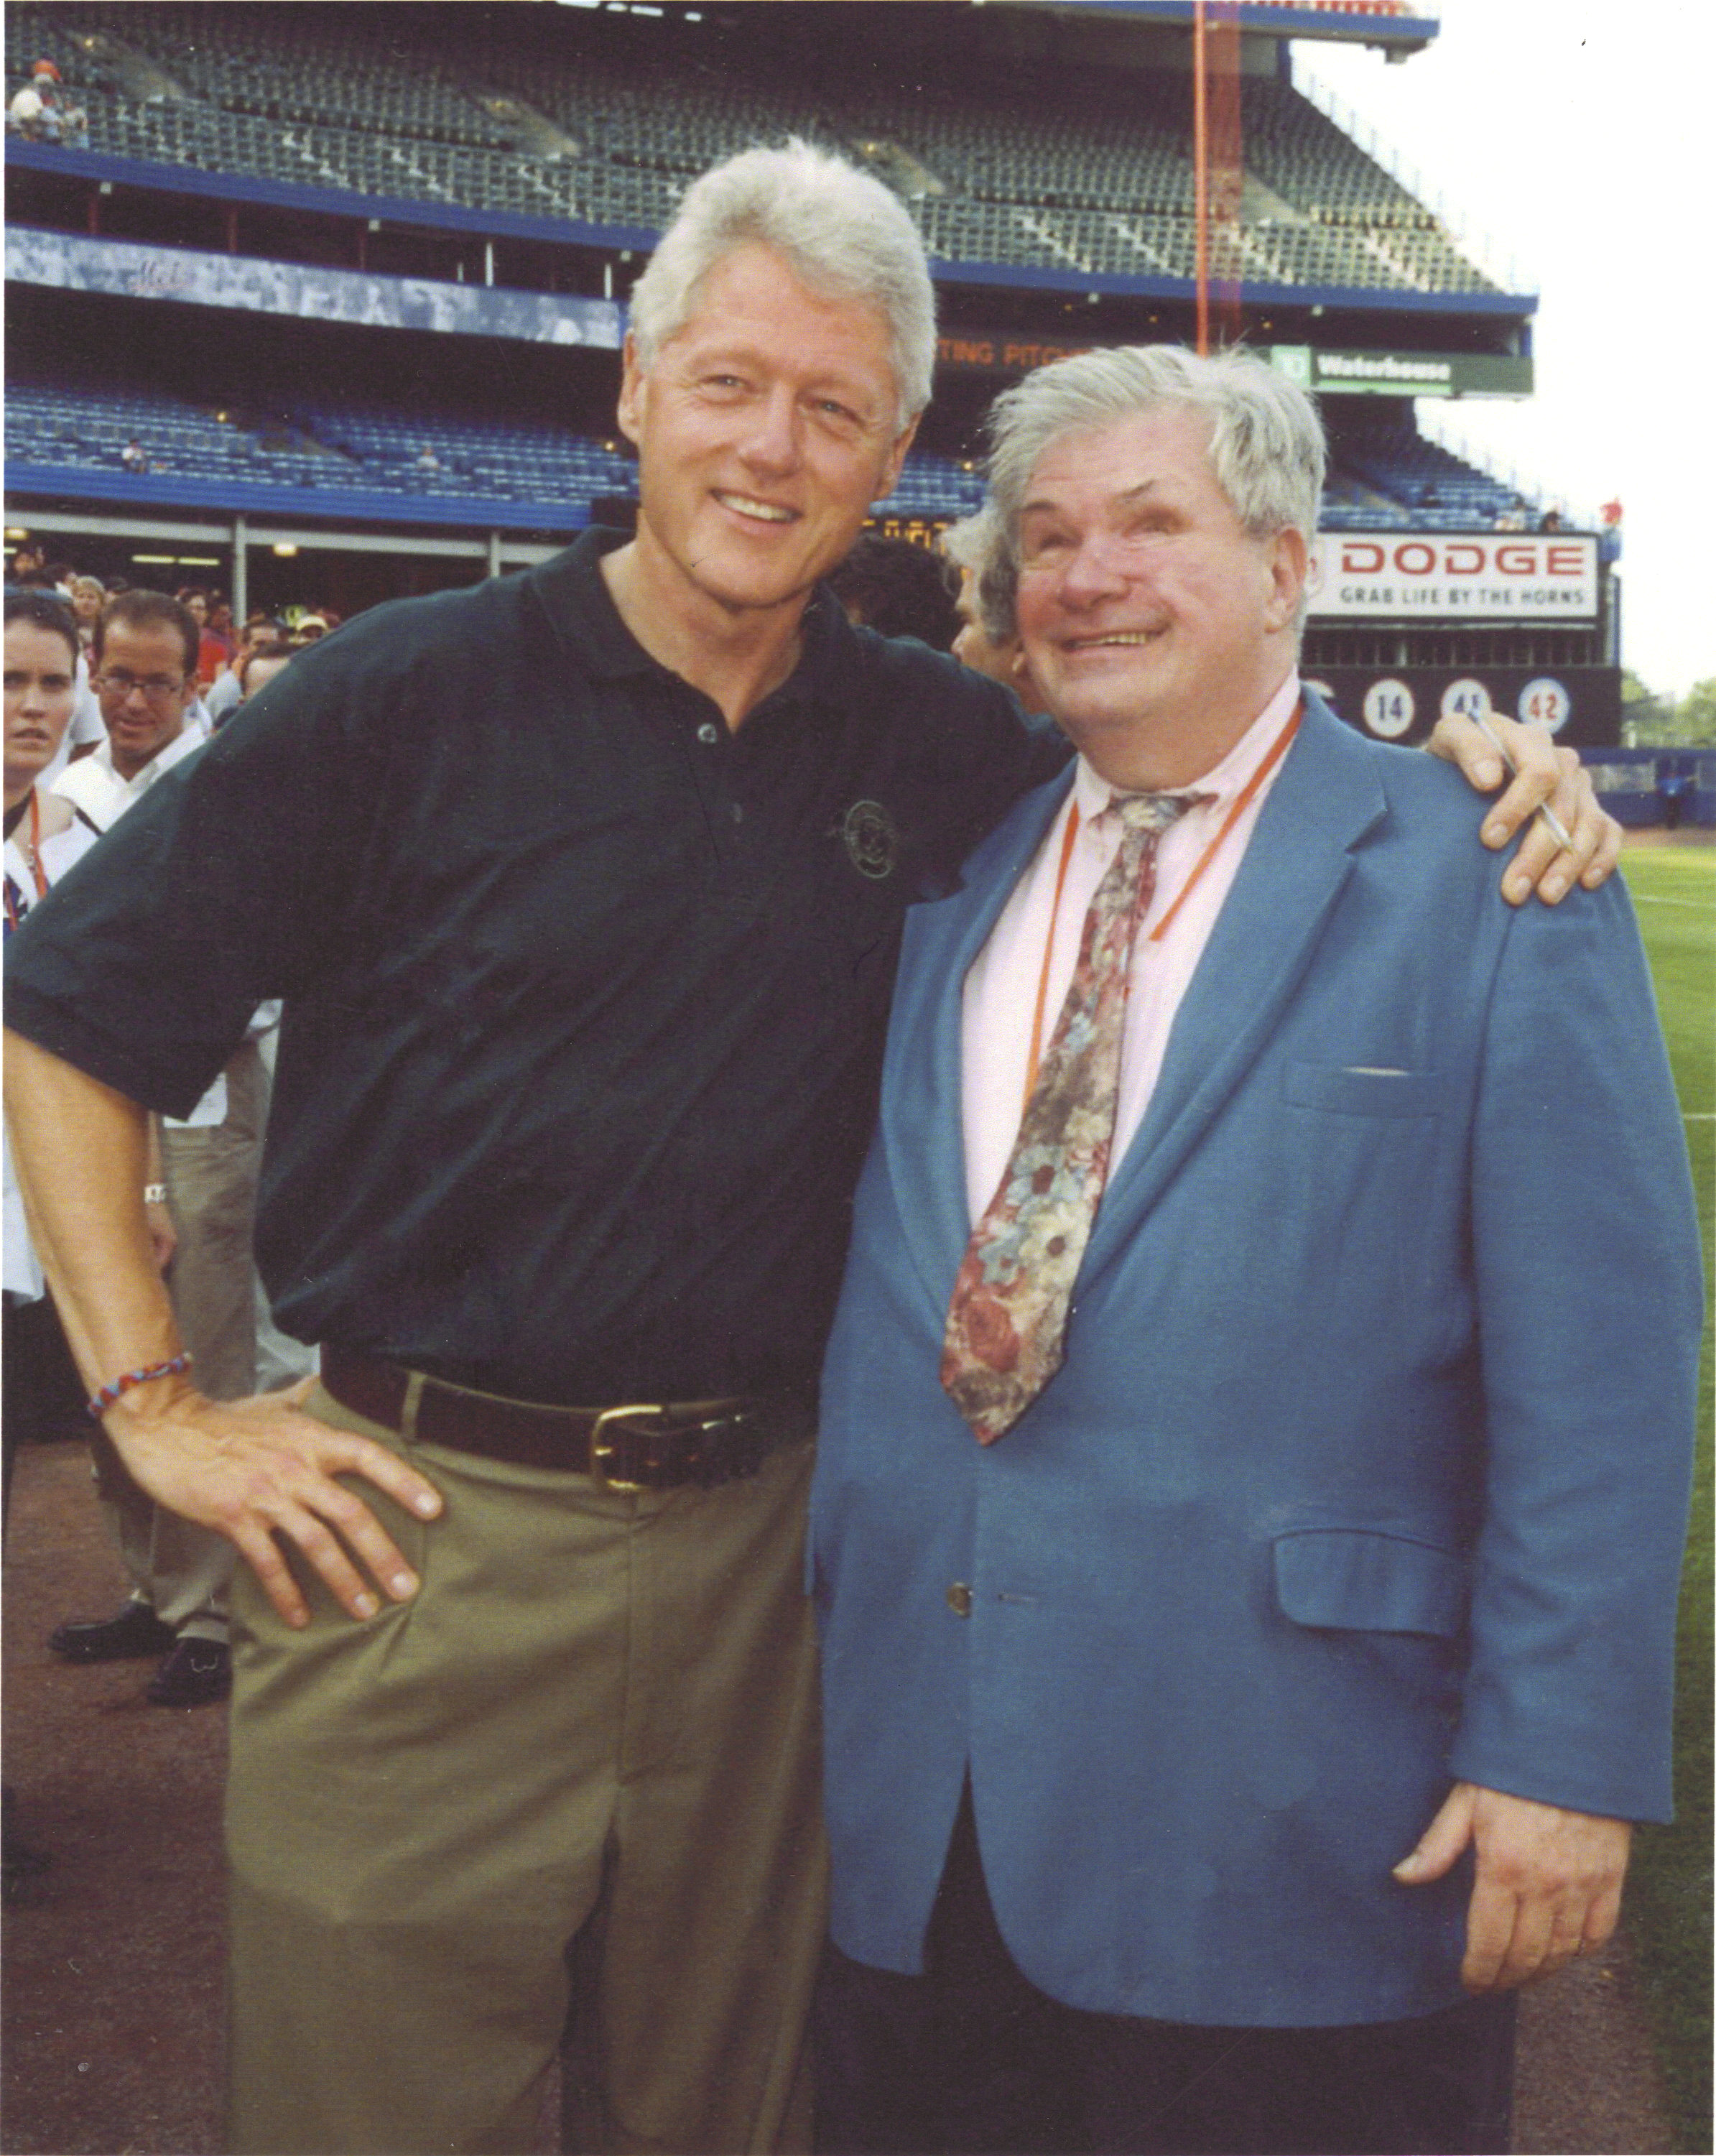 Ed and President Clinton.jpg